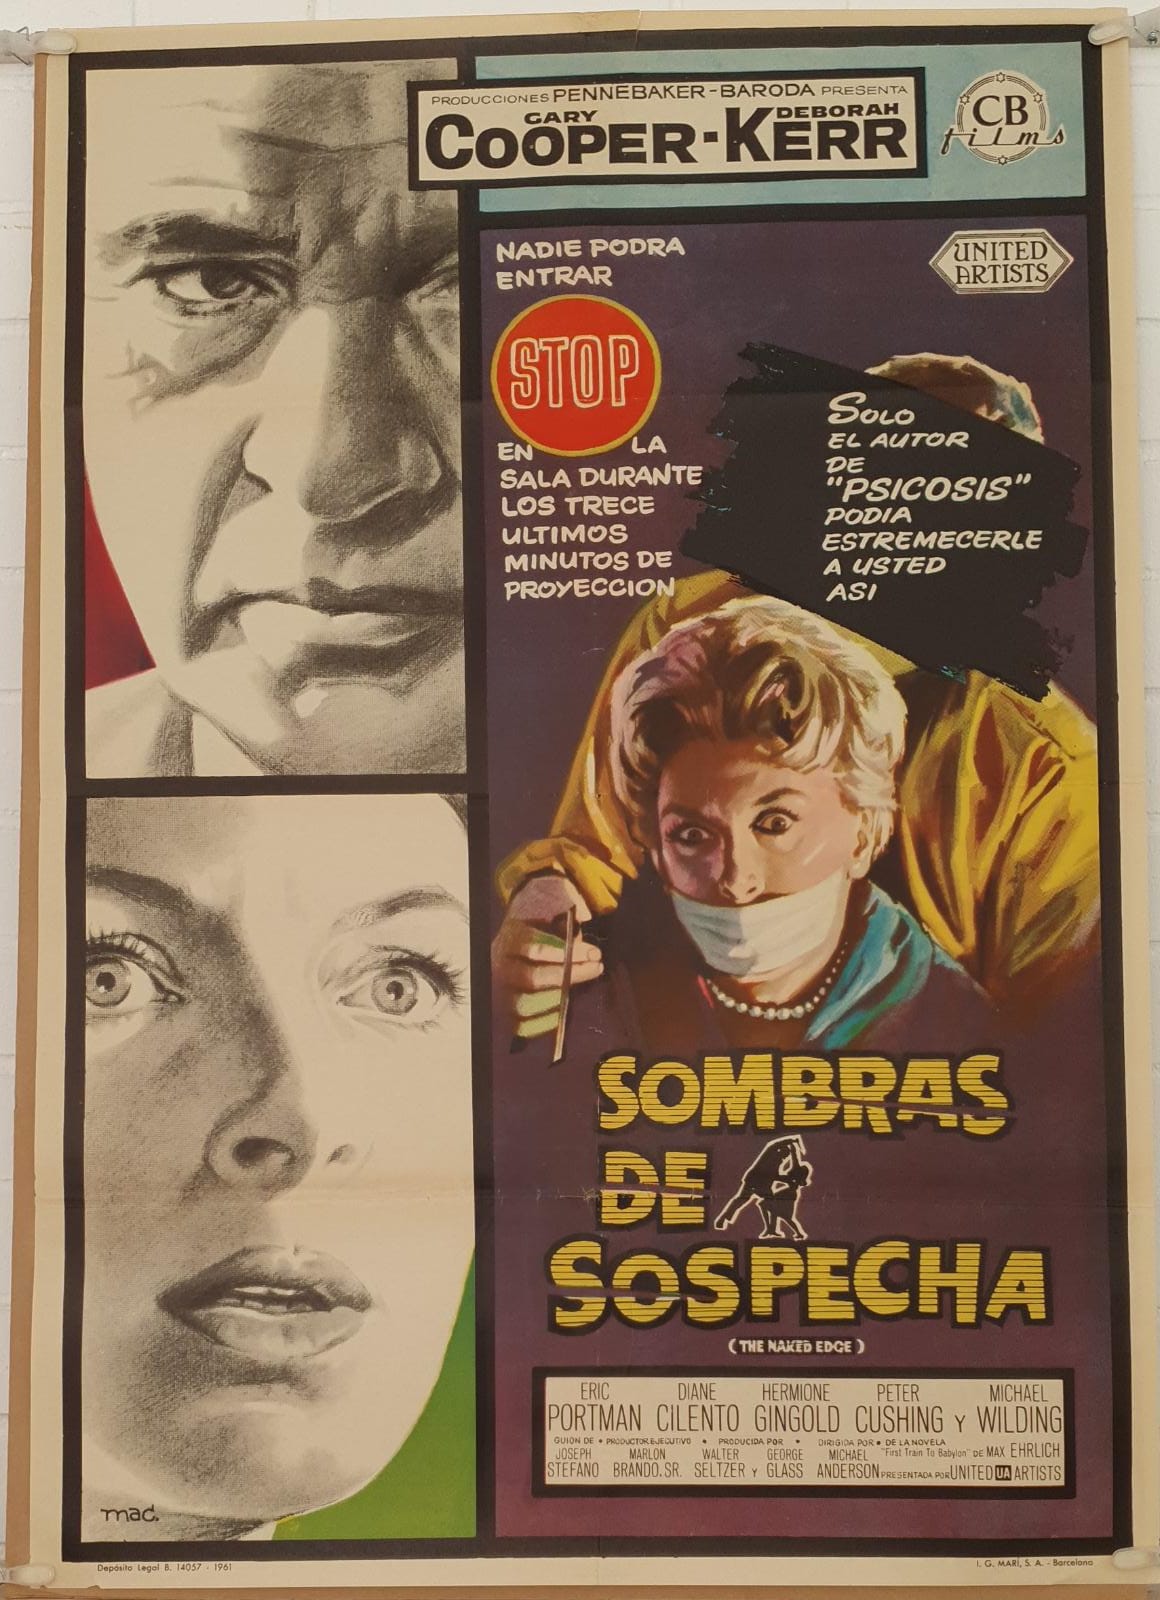 Sombras de sospecha. Cartel (100x70) de Estreno, 1961